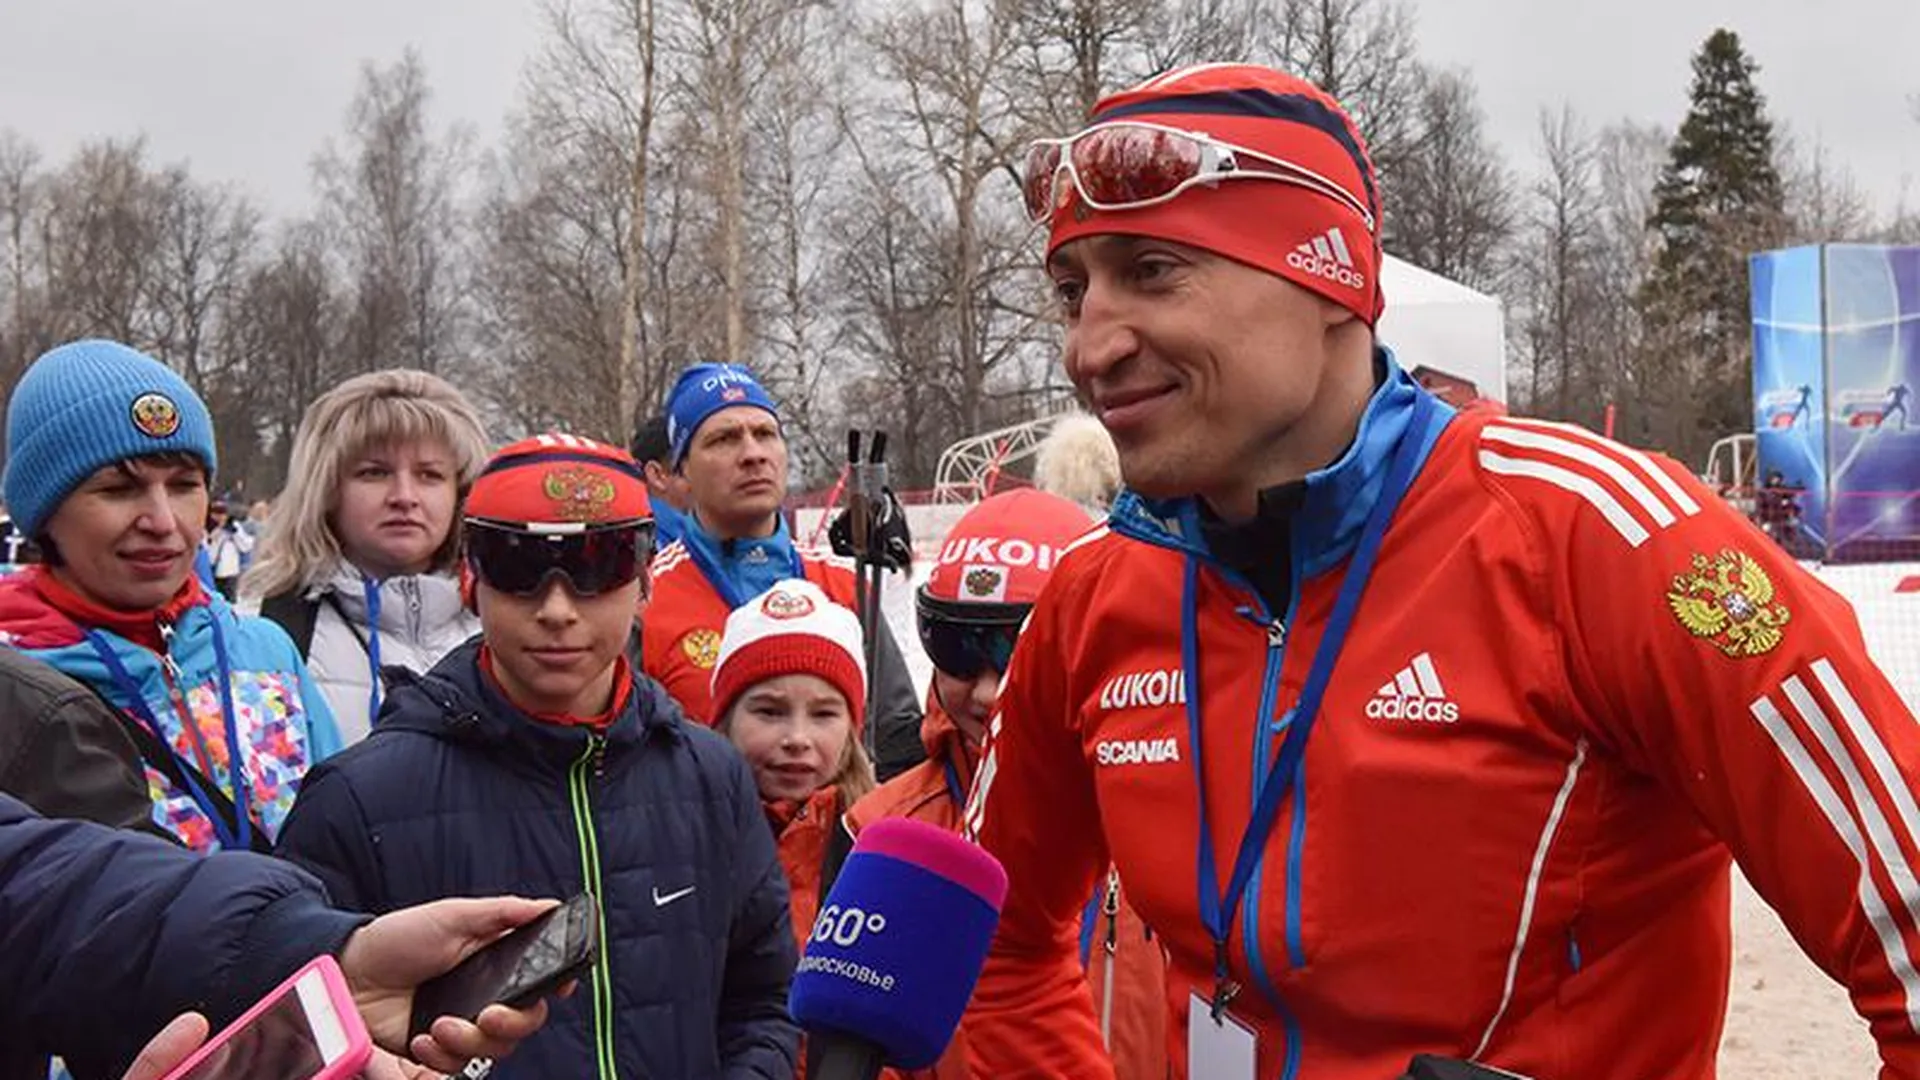 Александр Легков проведет лыжную гонку в тюбинг-парке «Елагино»